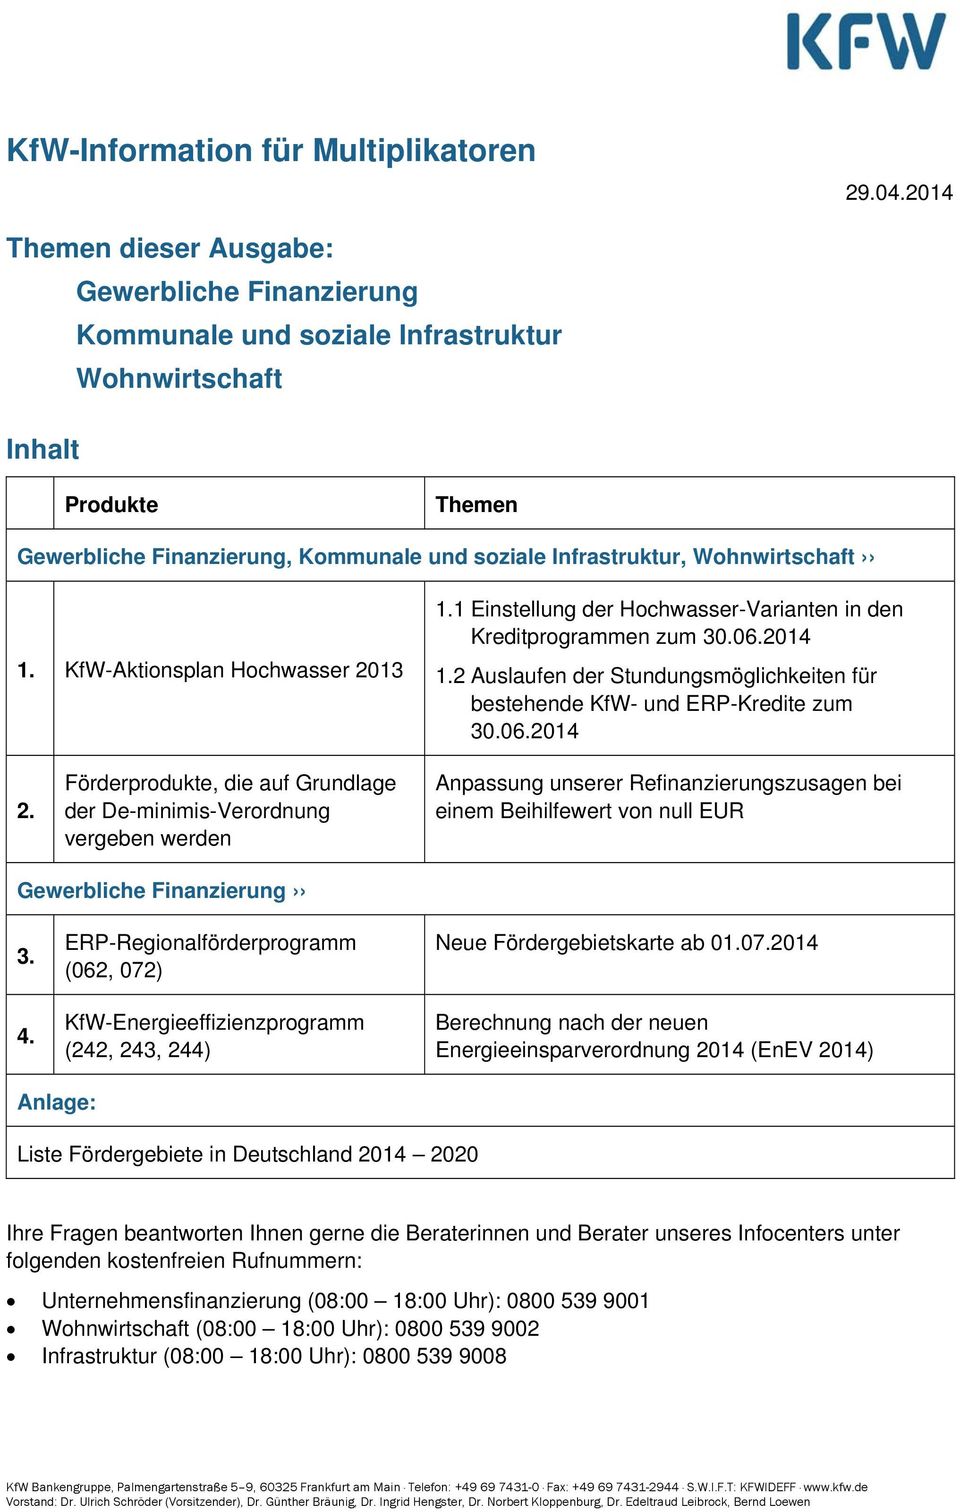 Wohnwirtschaft 1. KfW-Aktionsplan Hochwasser 2013 1.1 Einstellung der Hochwasser-Varianten in den Kreditprogrammen zum 30.06.2014 1.